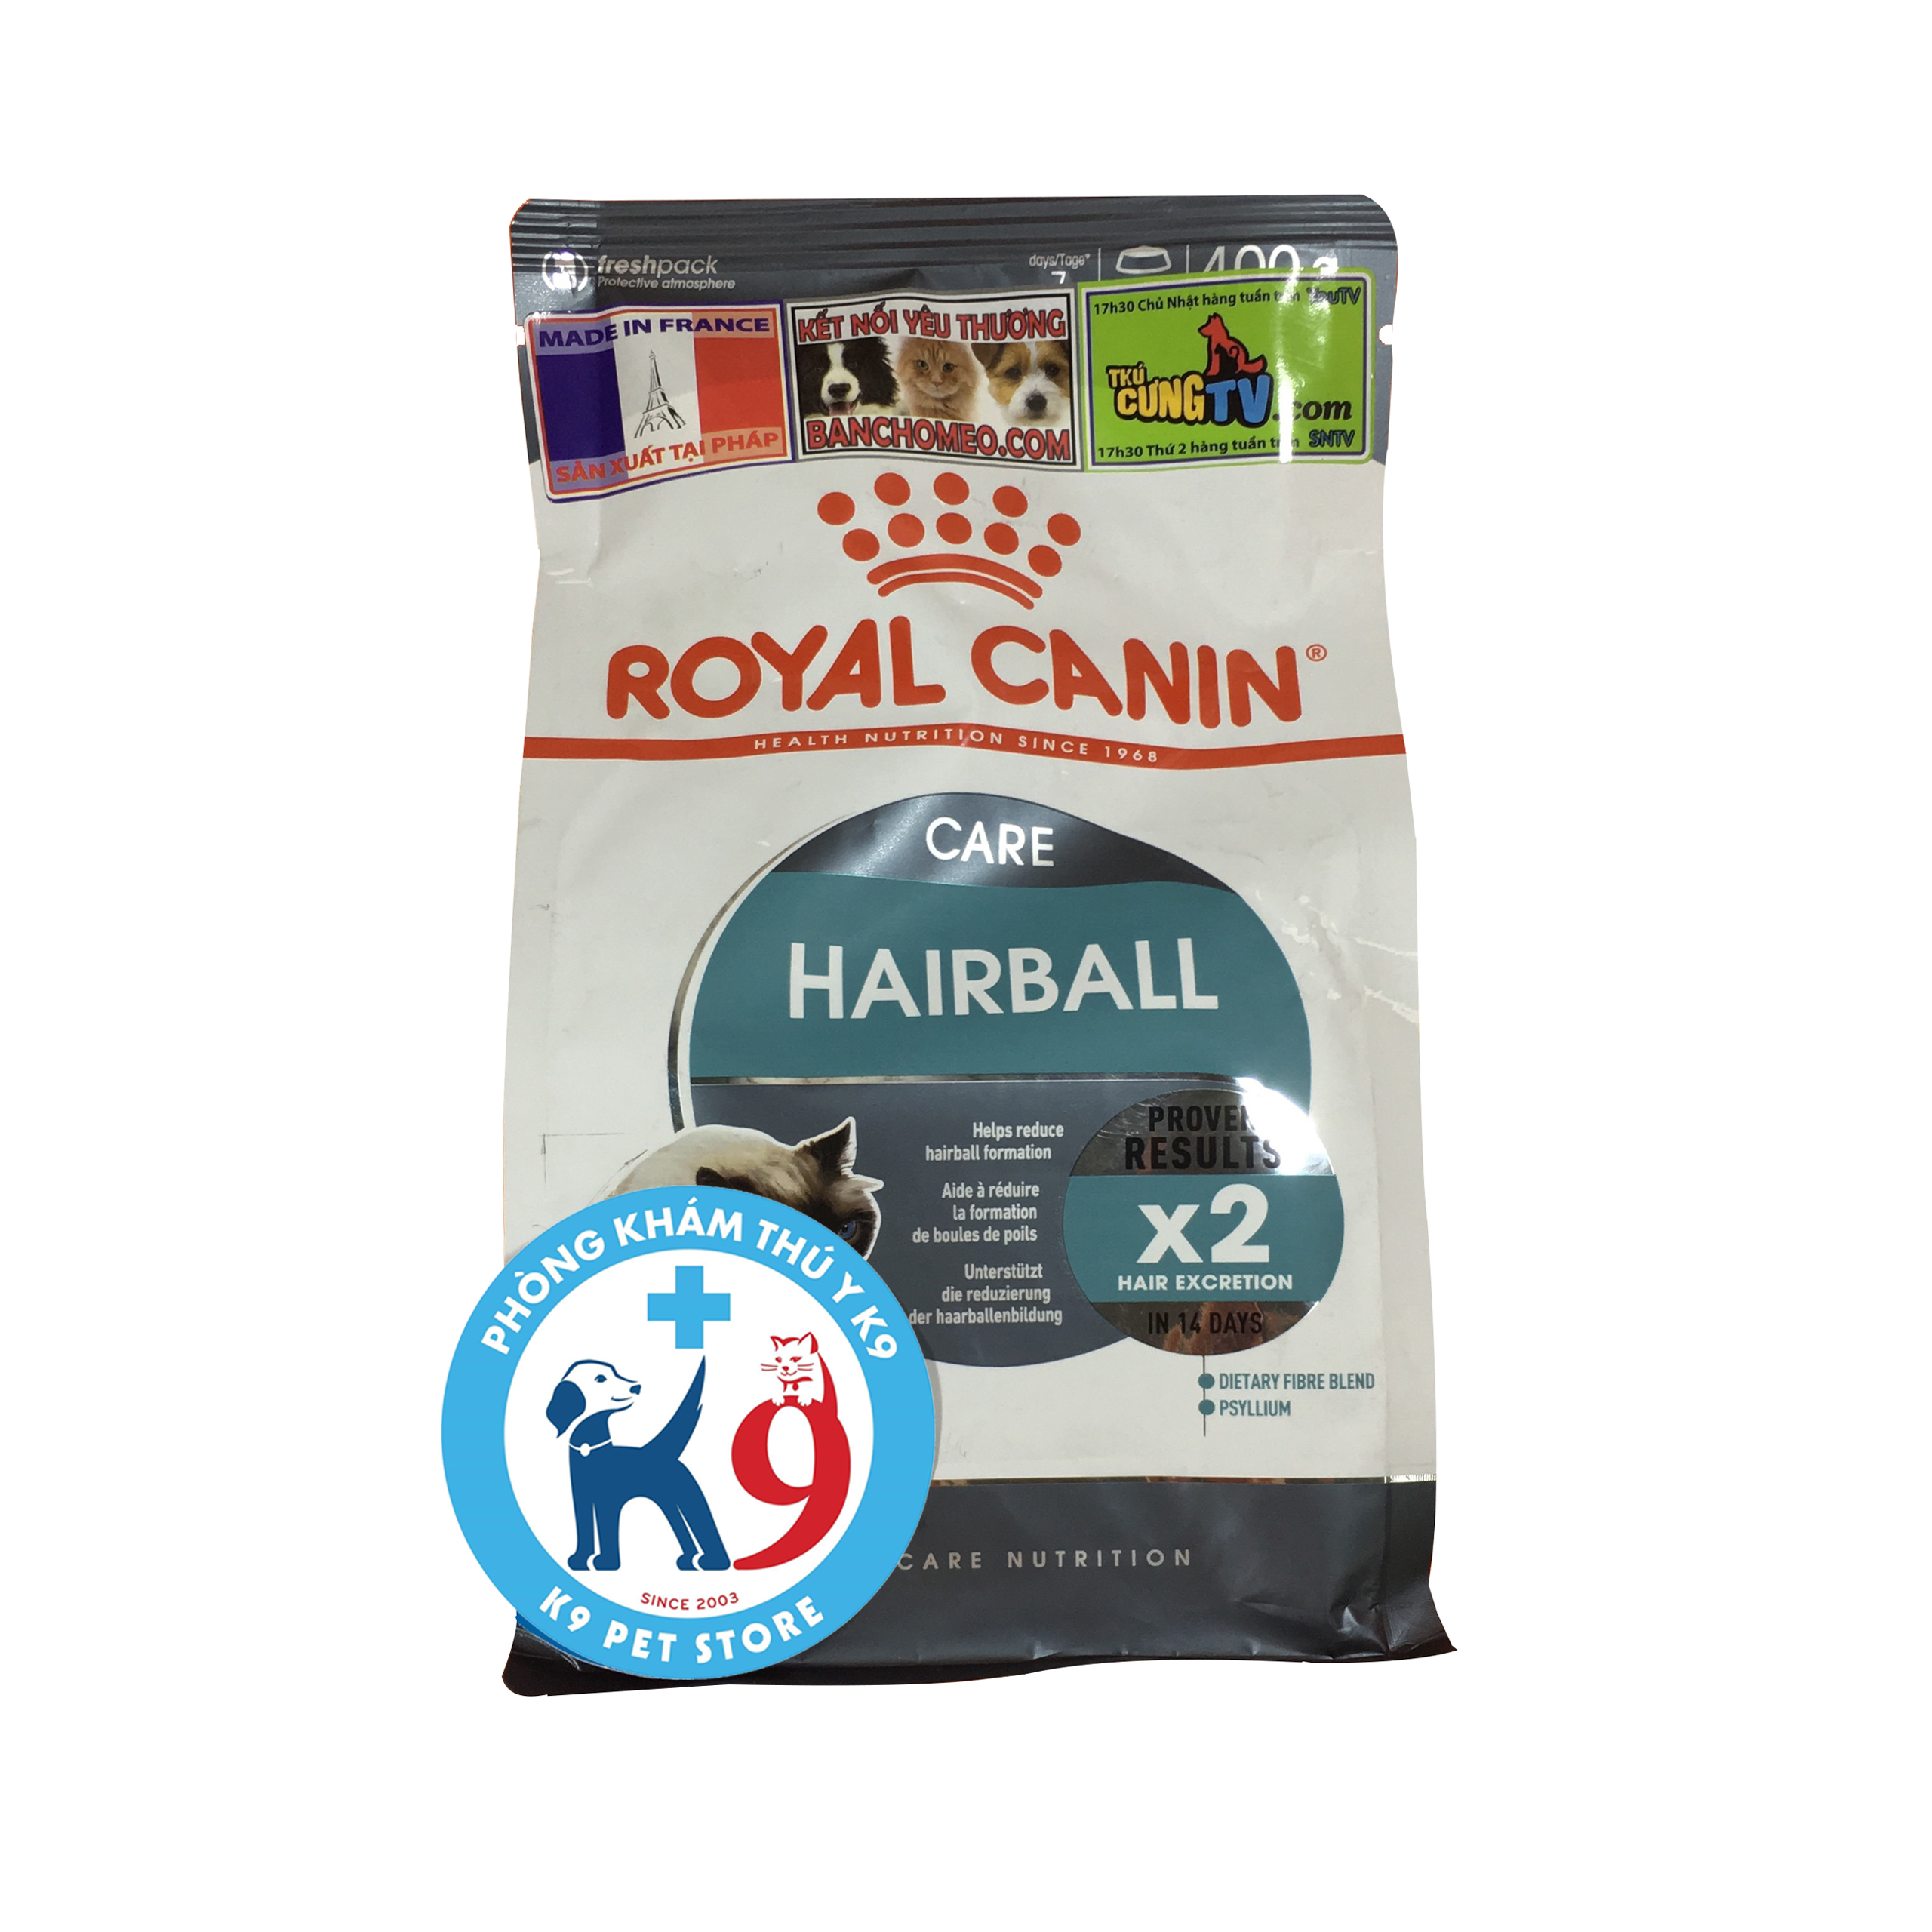 Royal canin hairball care - Thức ăn cho mèo tiêu hóa lông, búi lông 400gr